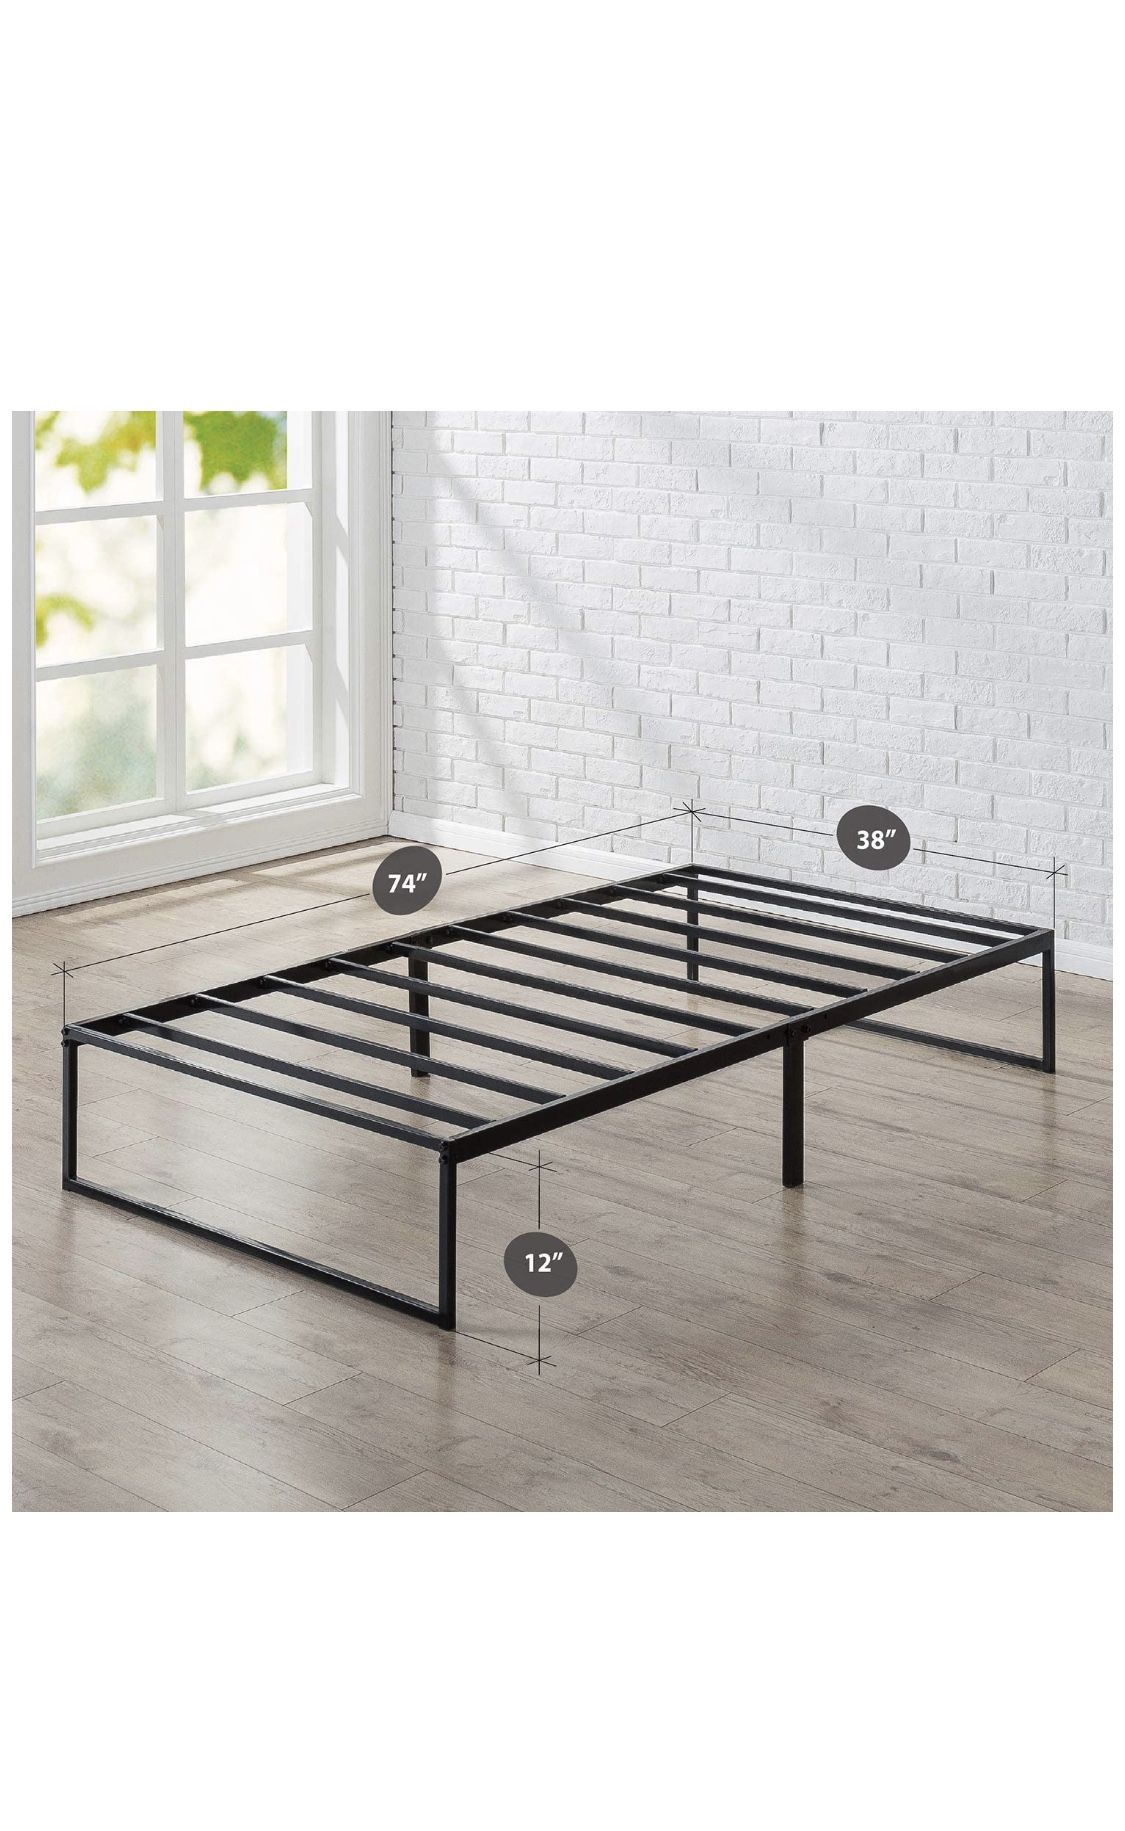 12 Inch TWIN Platform Metal Bed Frame